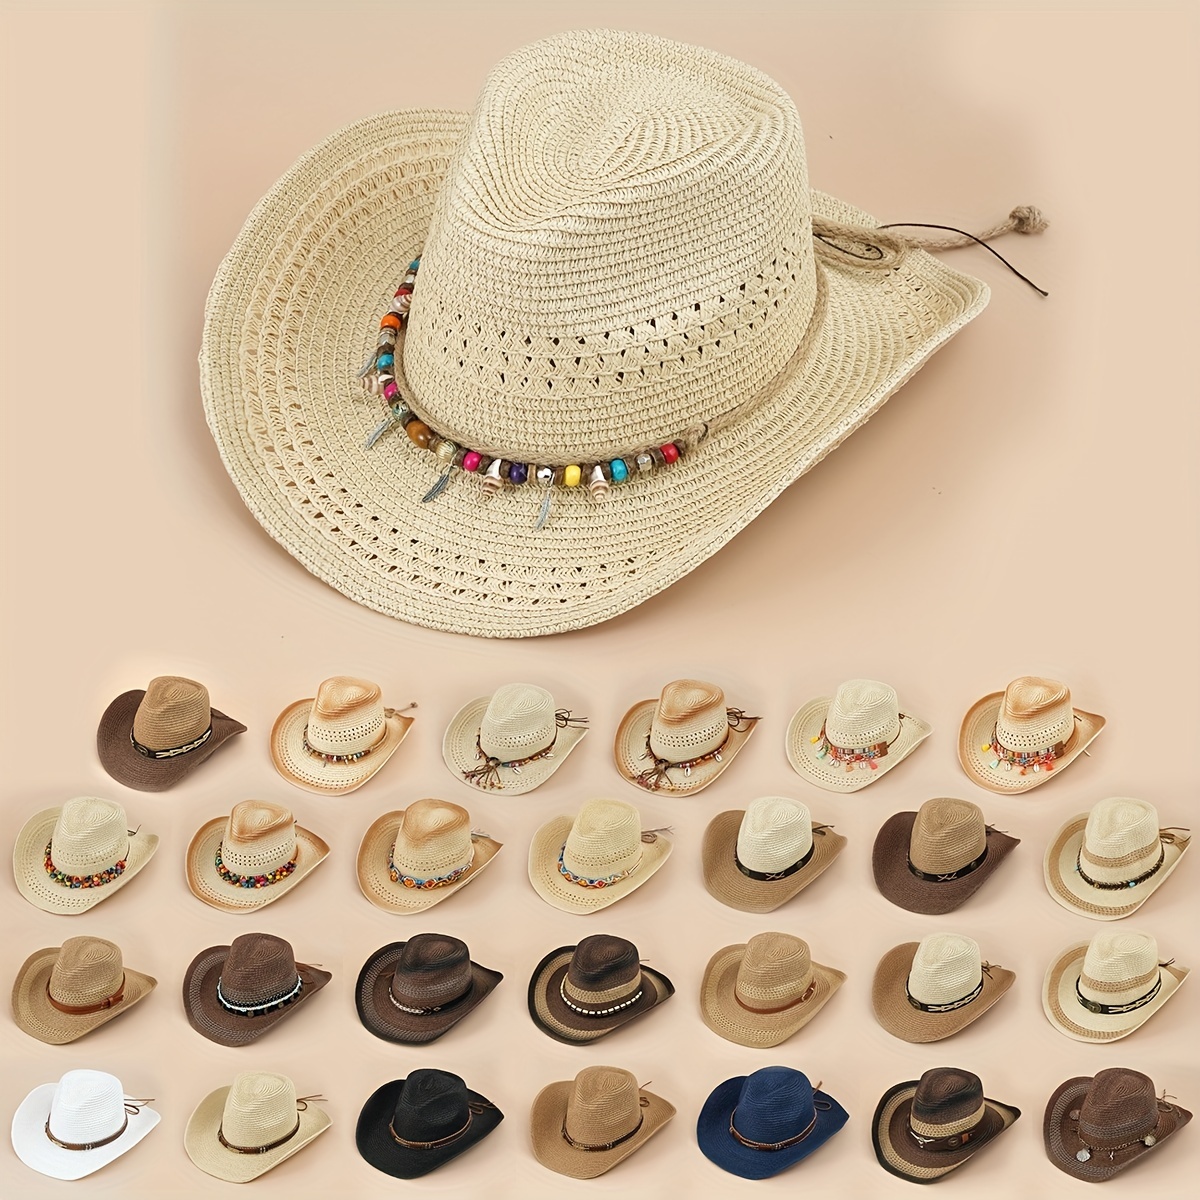 Sombreros para bailar country - hombre y mujer - estilo cowboy